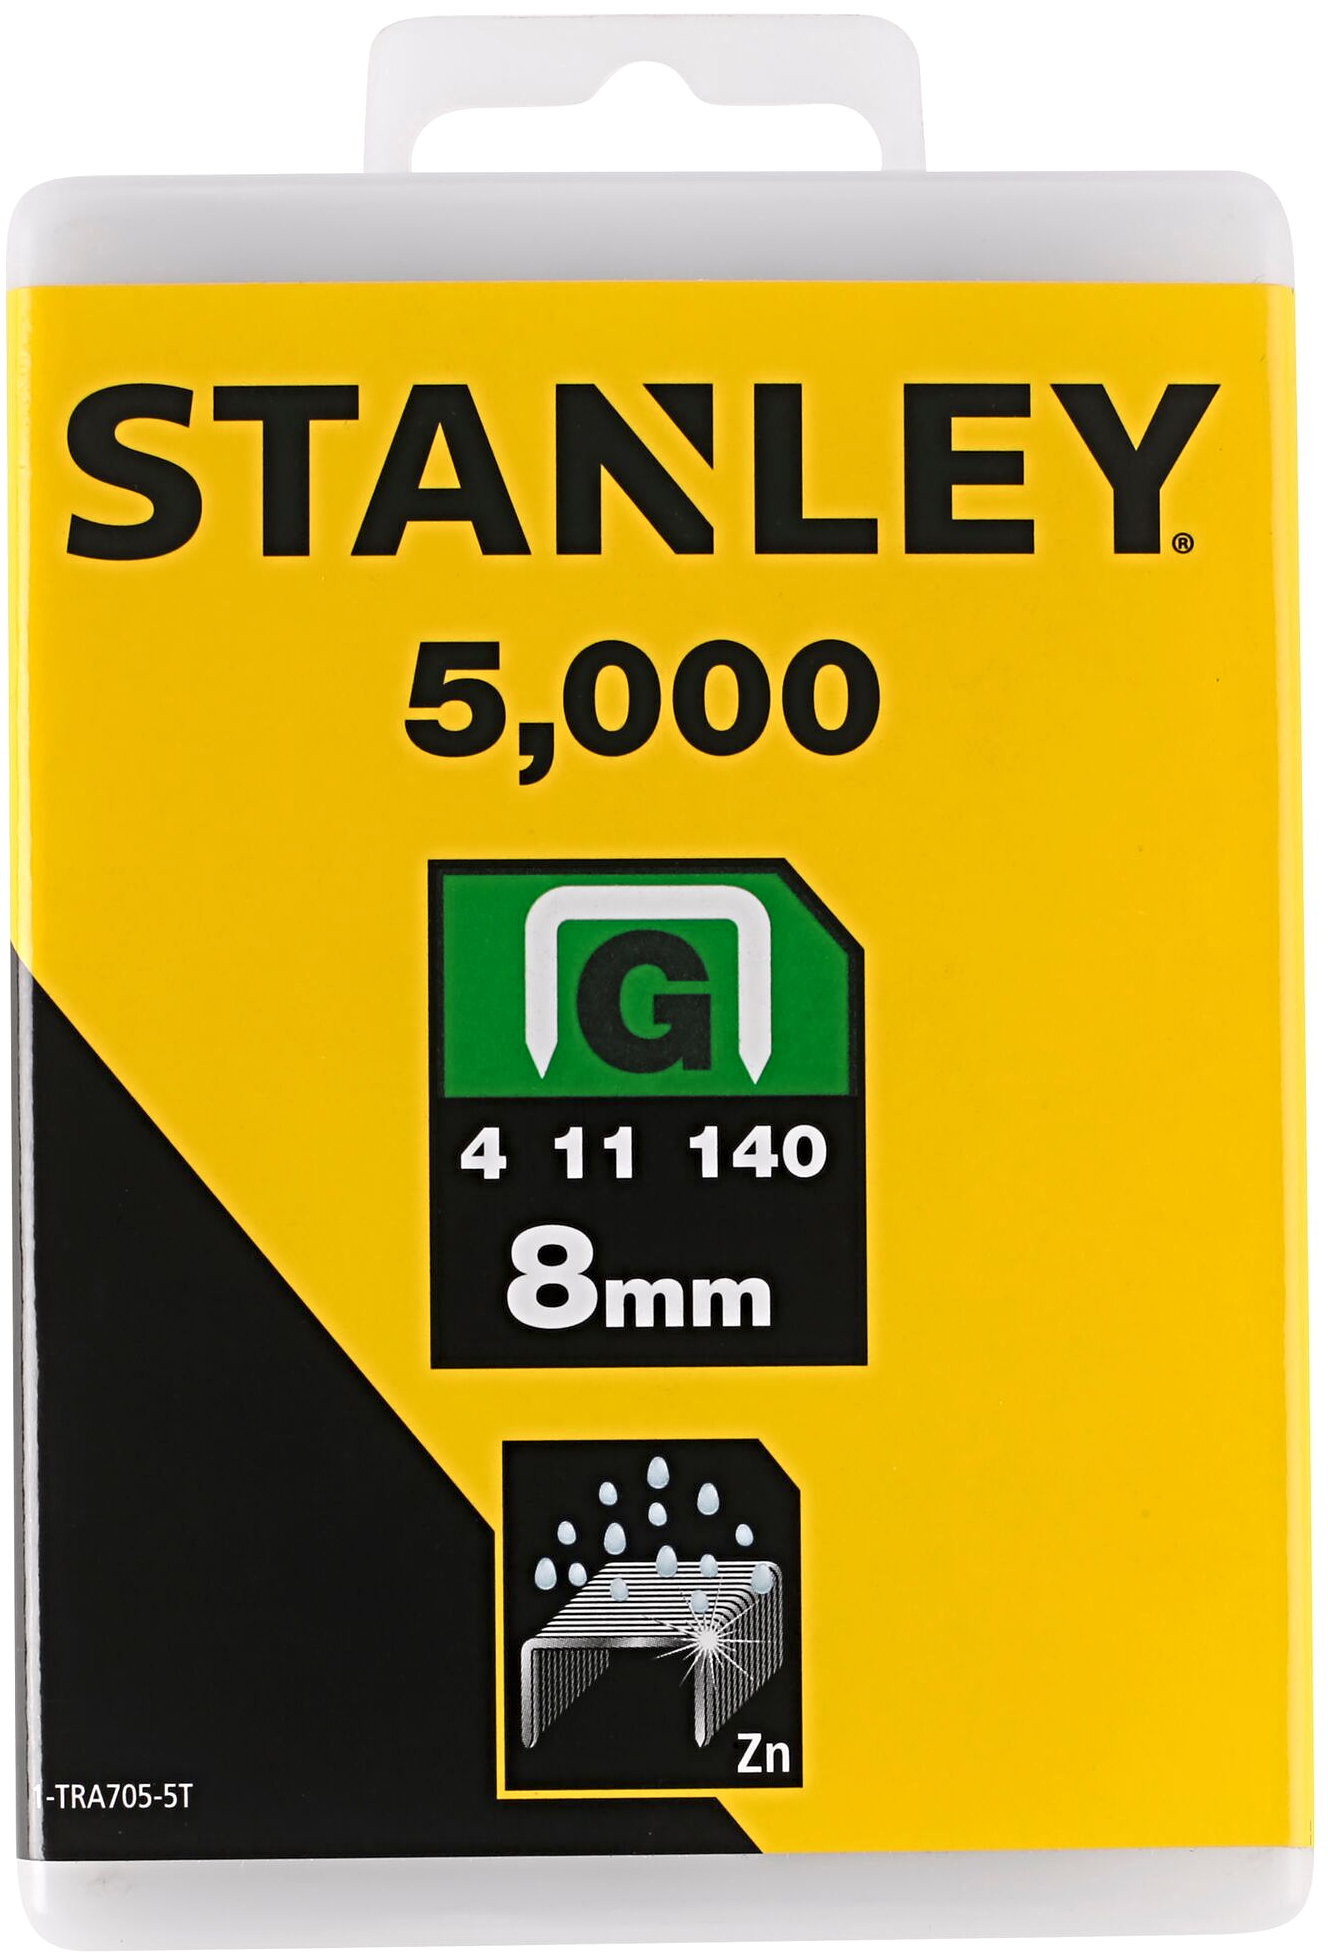 Levně STANLEY 1-TRA705-5T spony HD typ G - 10,6 mm, délka 8 mm, 5000 ks